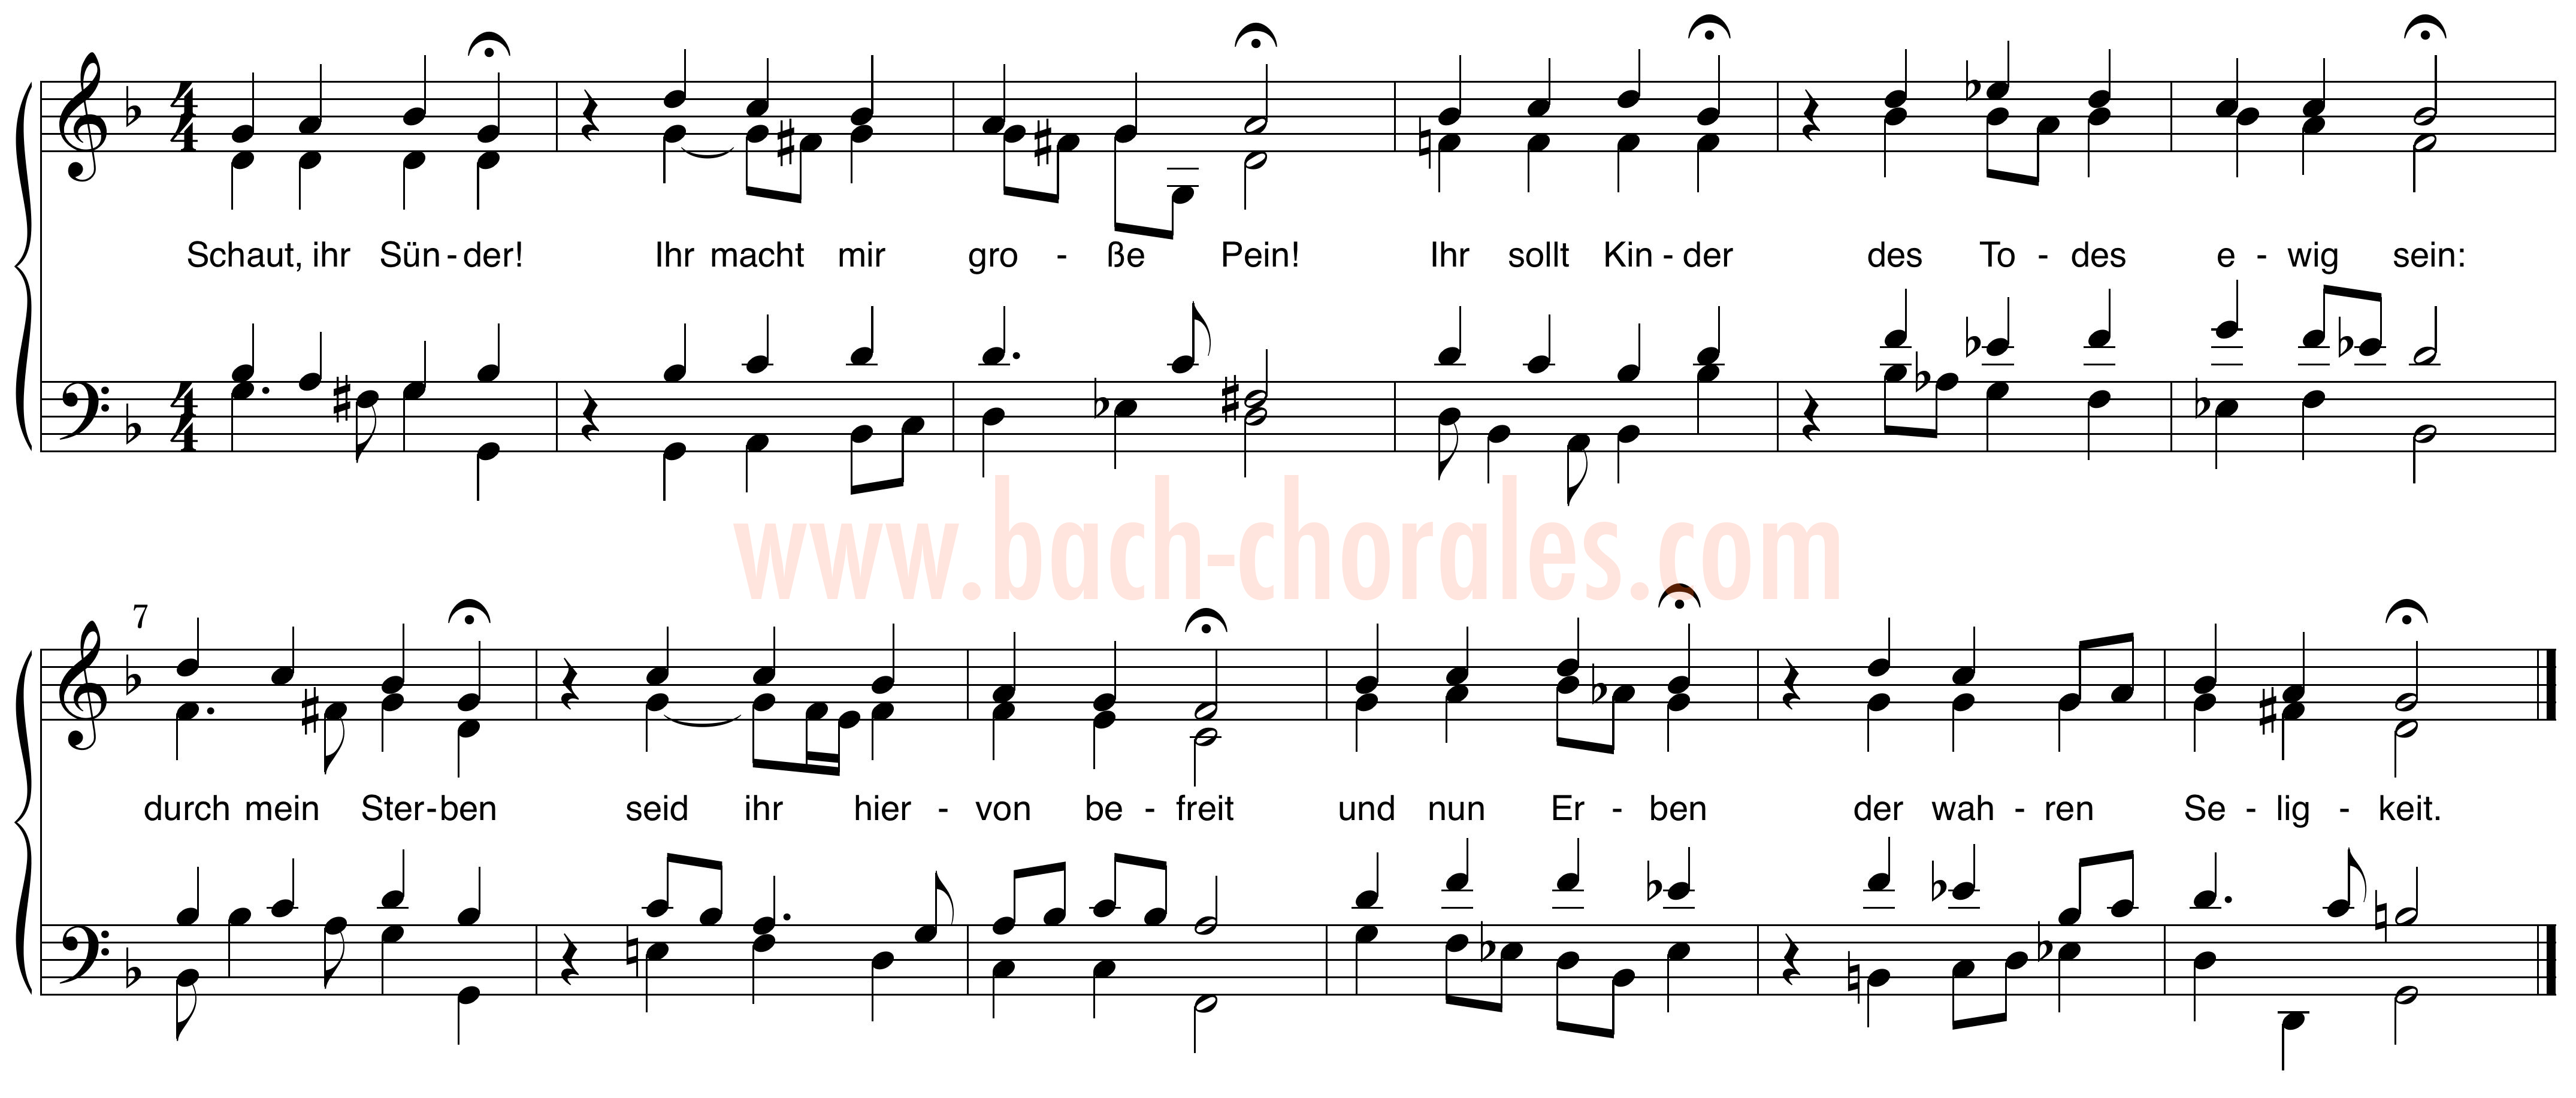 notenbeeld BWV 408 op https://www.bach-chorales.com/